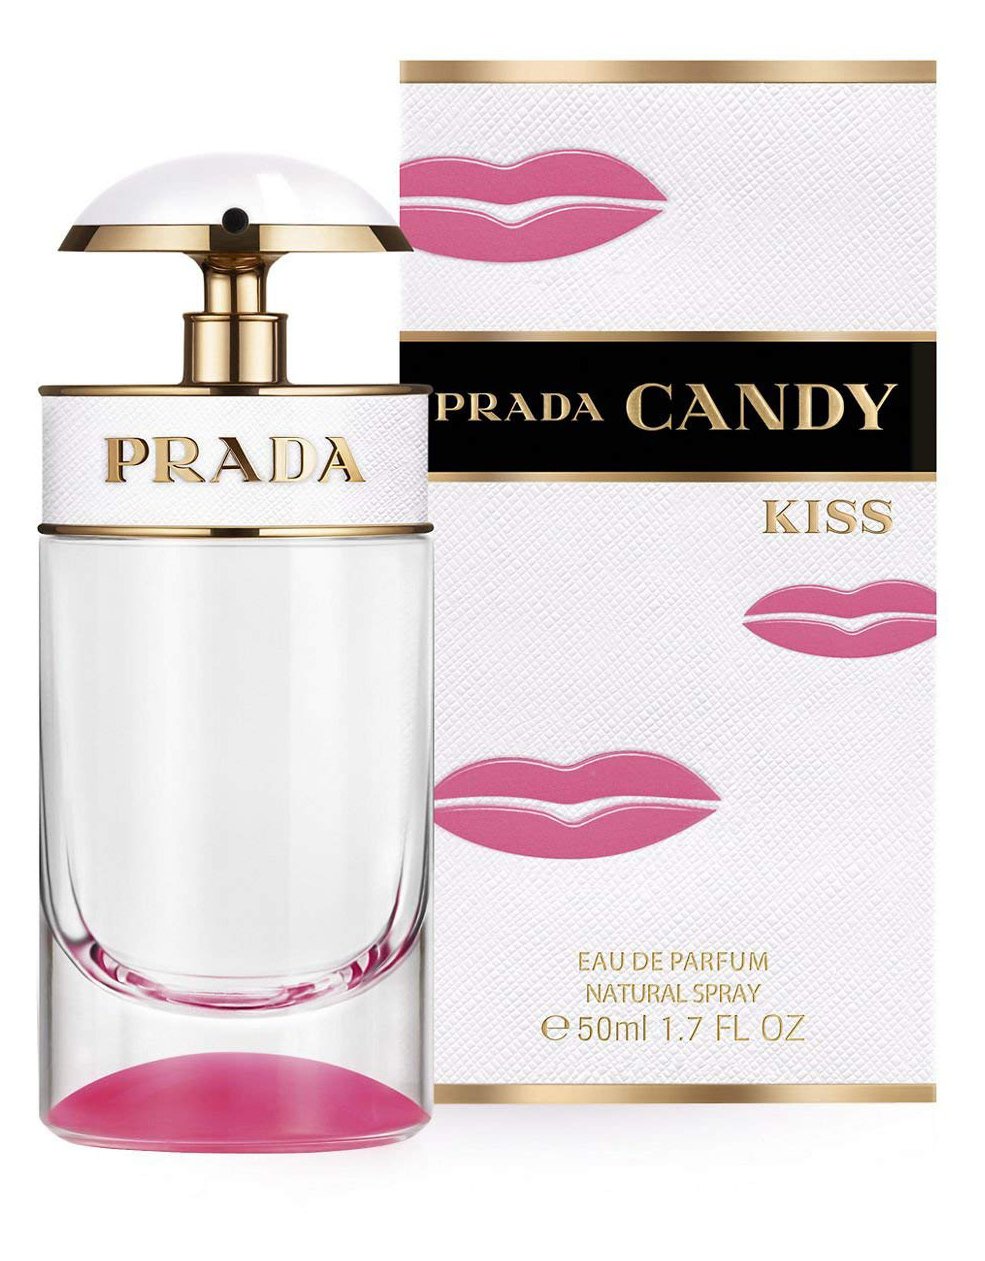 Prada - Candy Kiss Eau de Parfum 